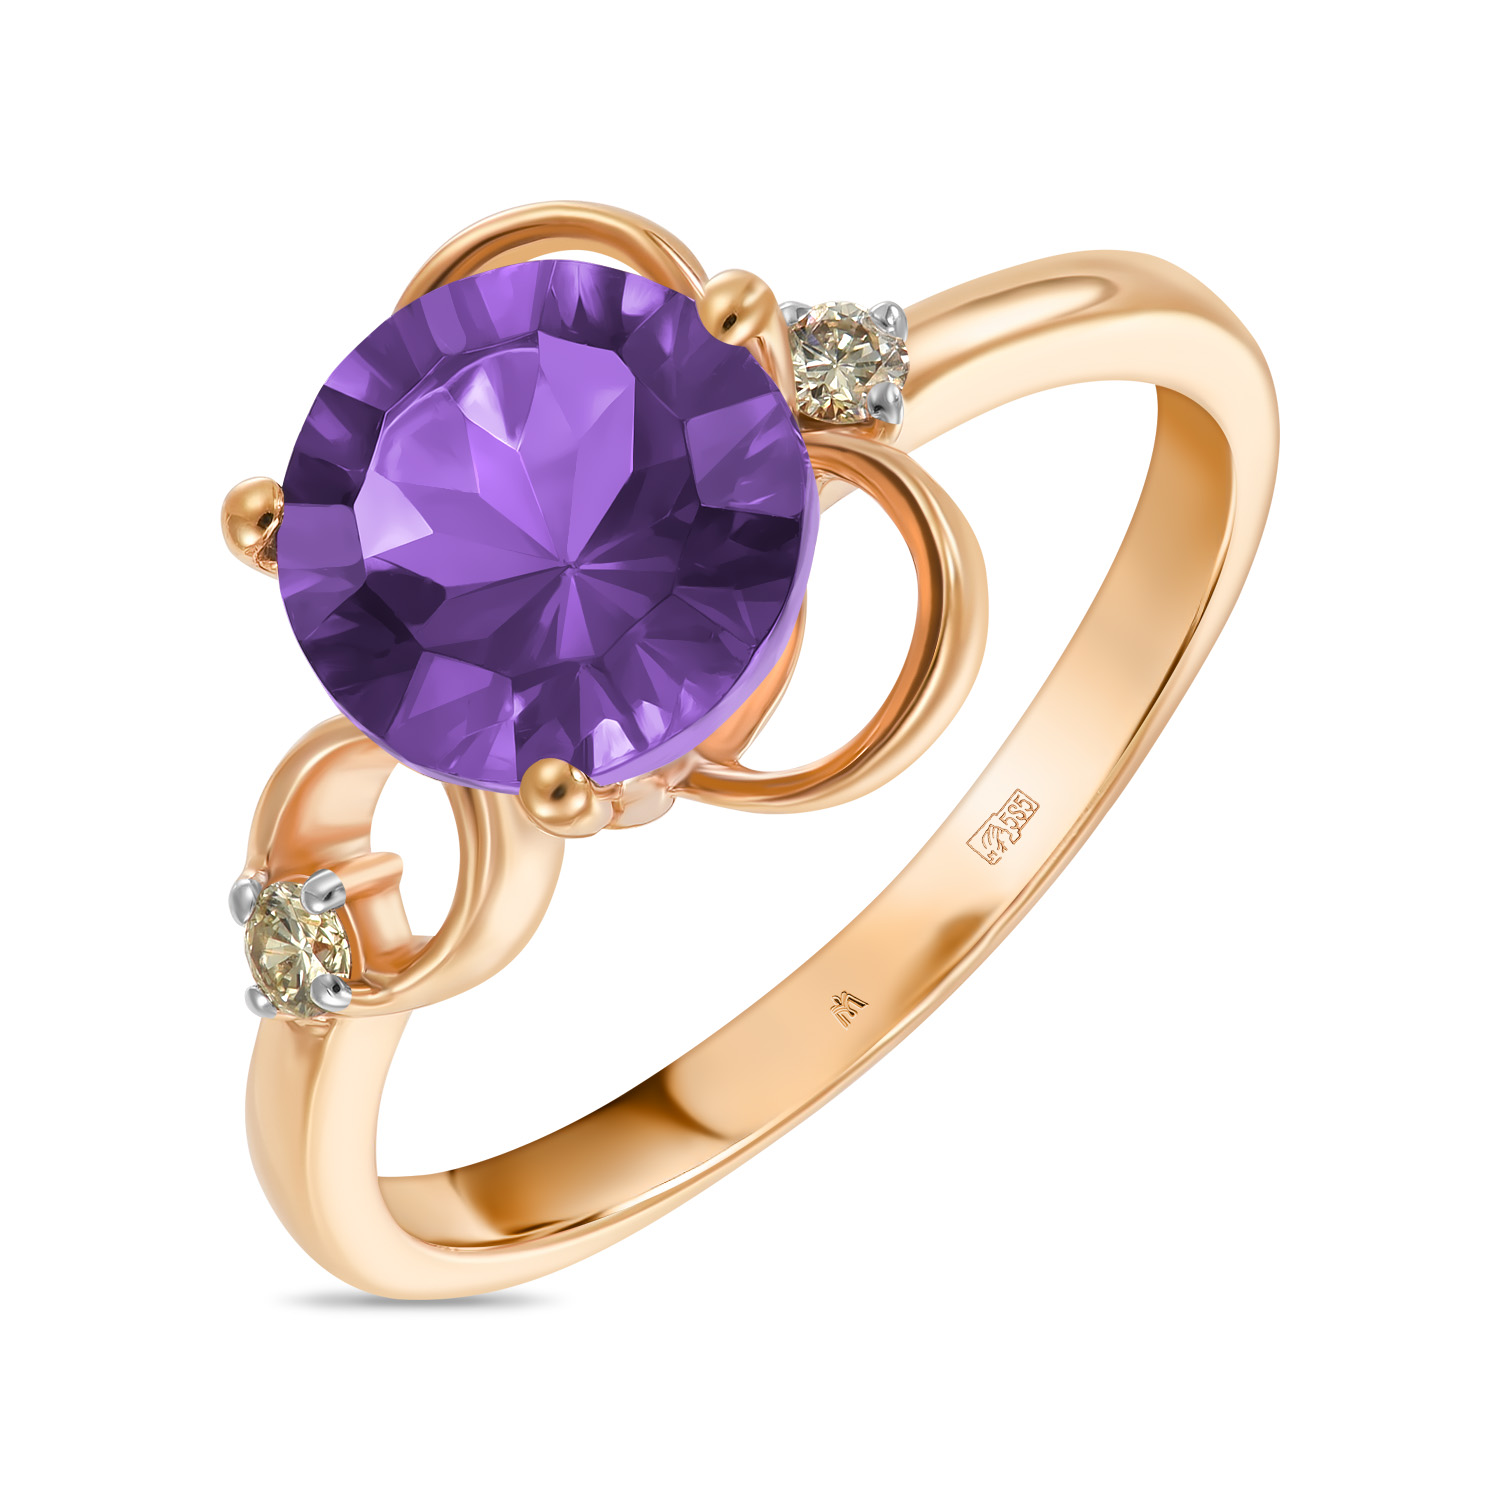 Кольца МЮЗ Золотое кольцо с аметистом и бриллиантами кольца мюз золотое кольцо с аметистом